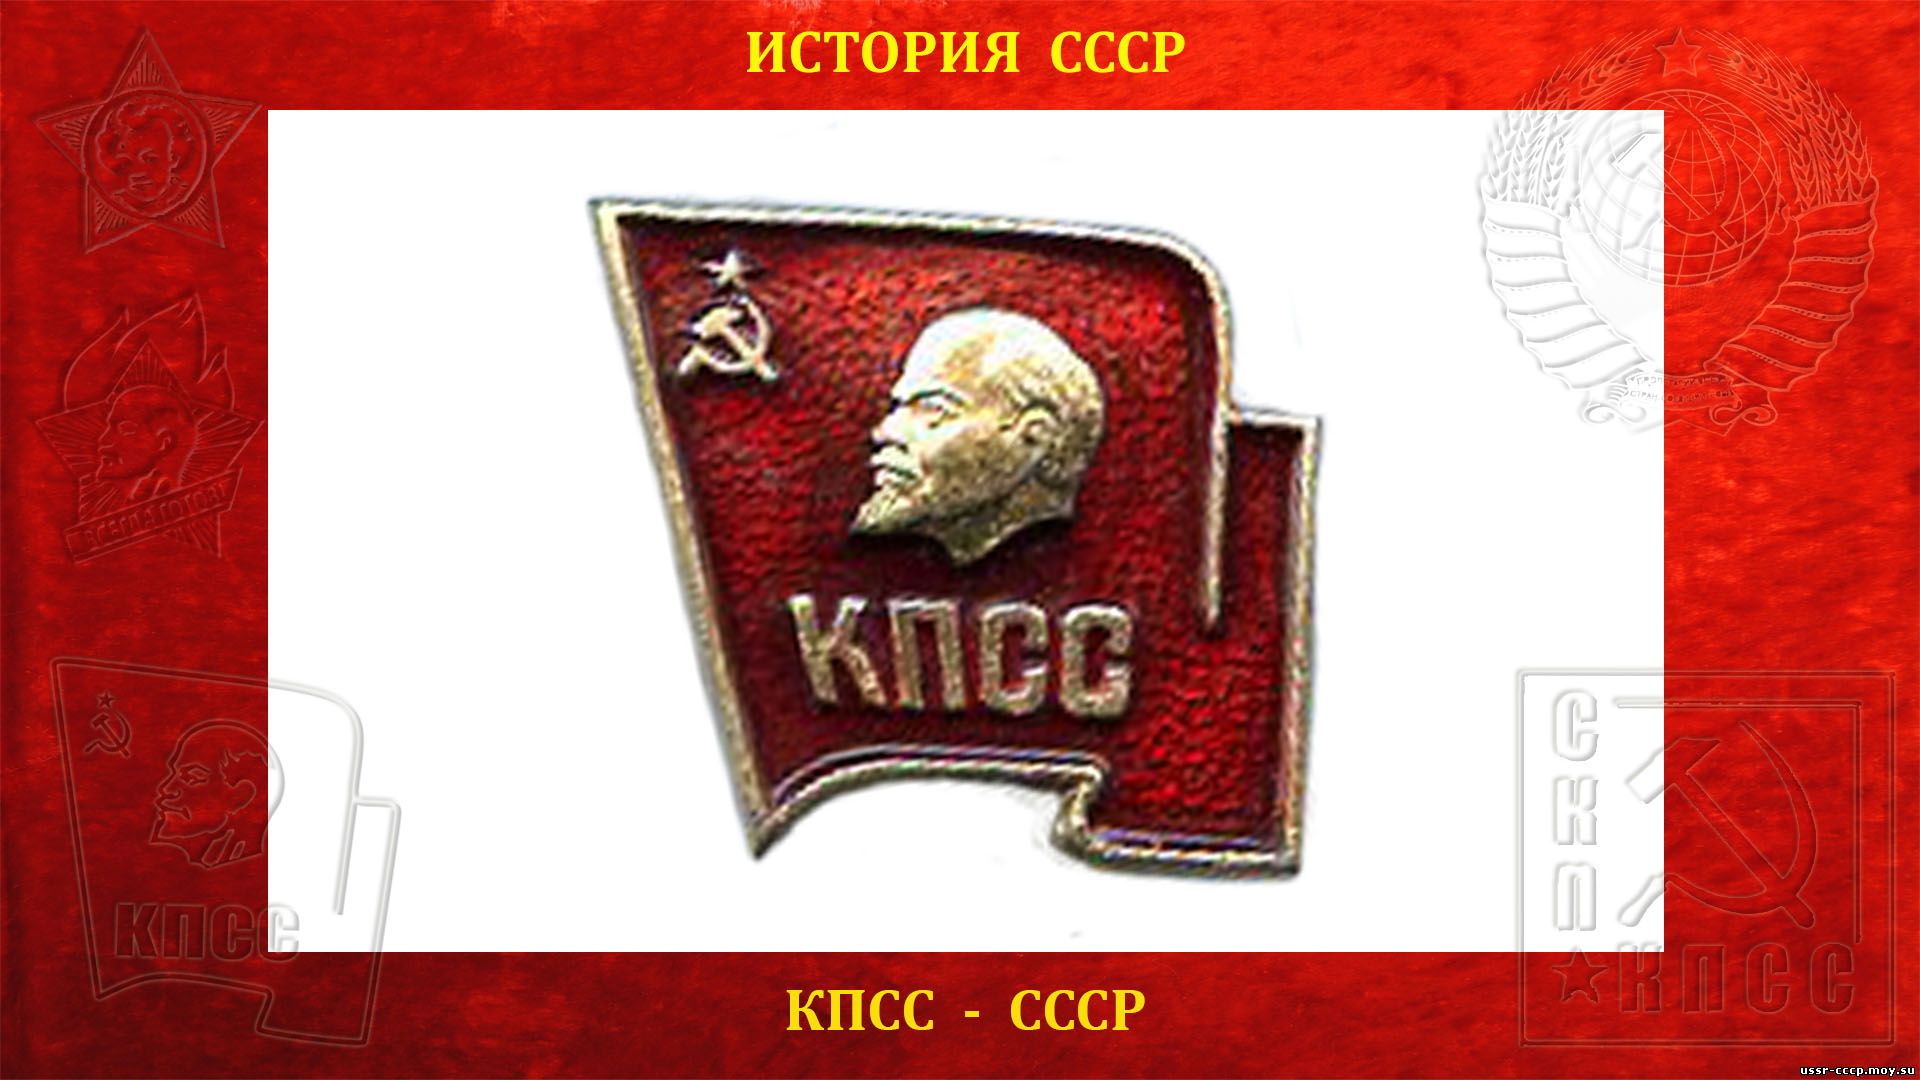 КПСС — Коммунистическая партия Советского Союза (повествование)